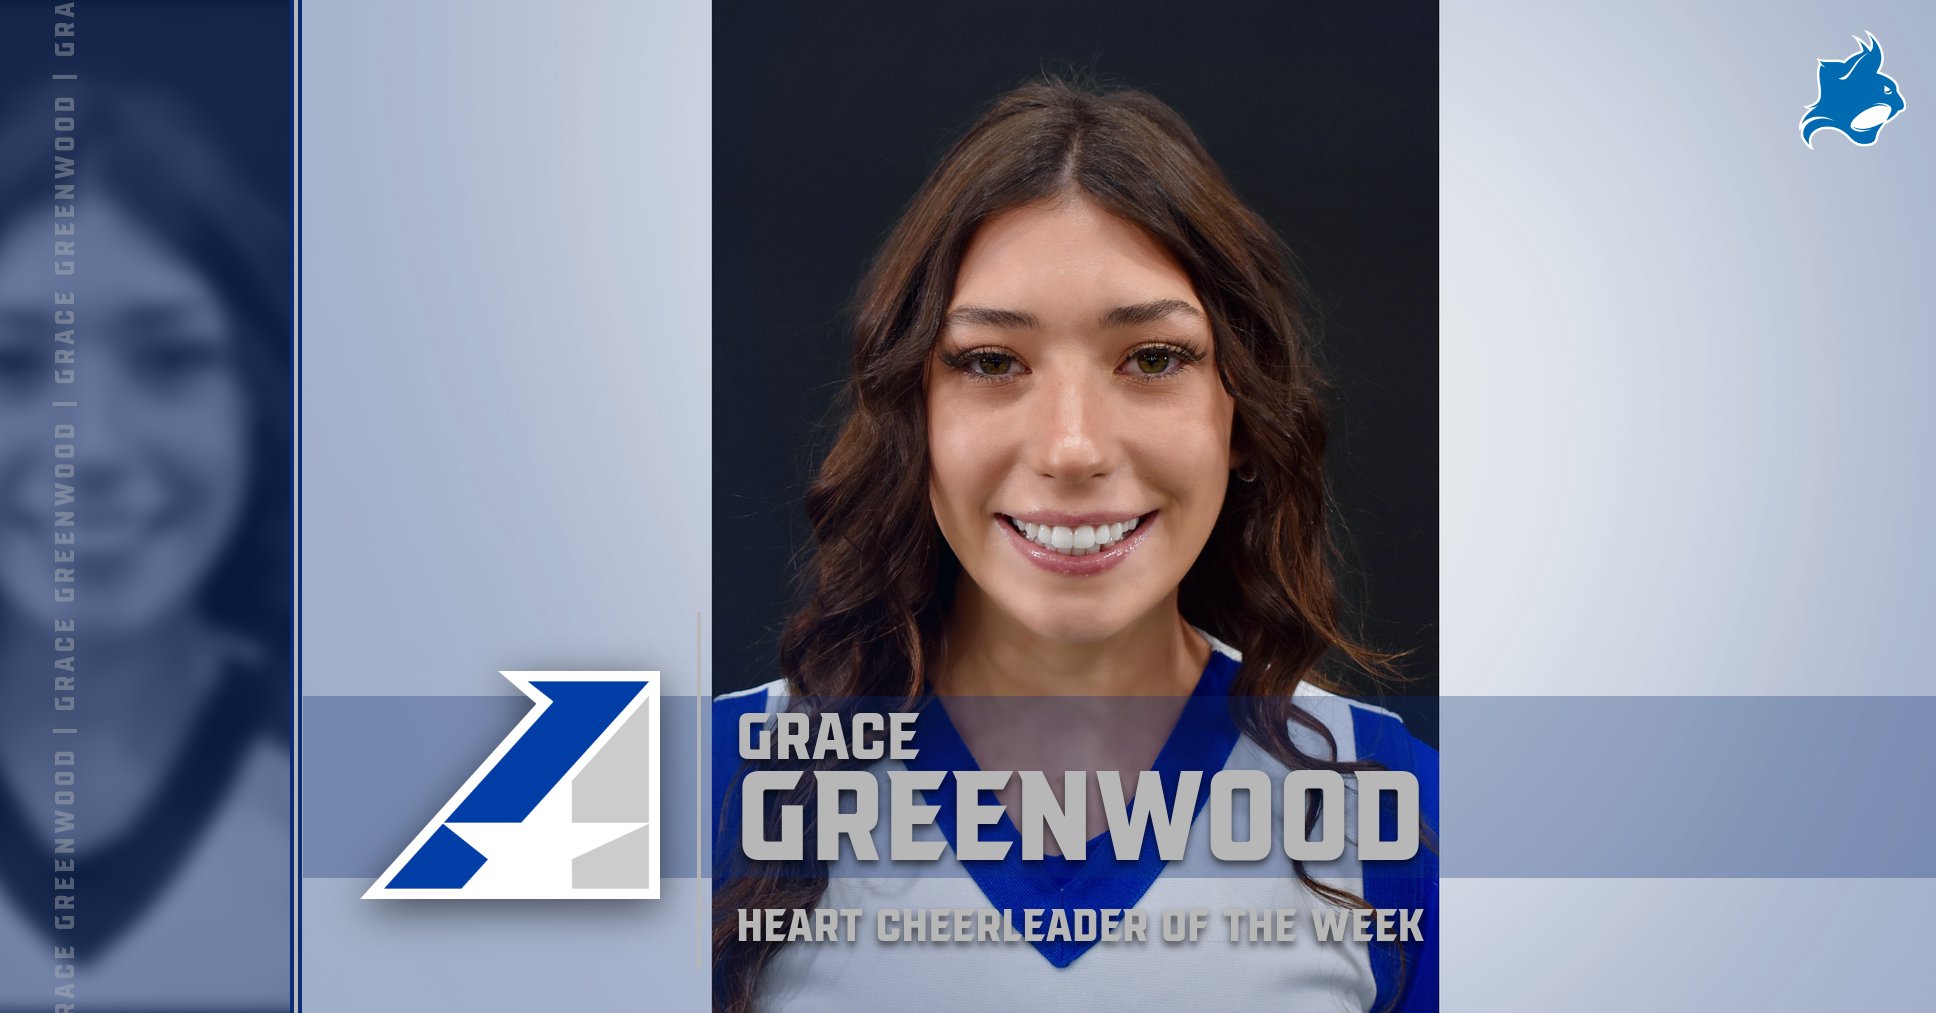 Peru State’s Grace Greenwood Selected Heart Cheerleader of the Week